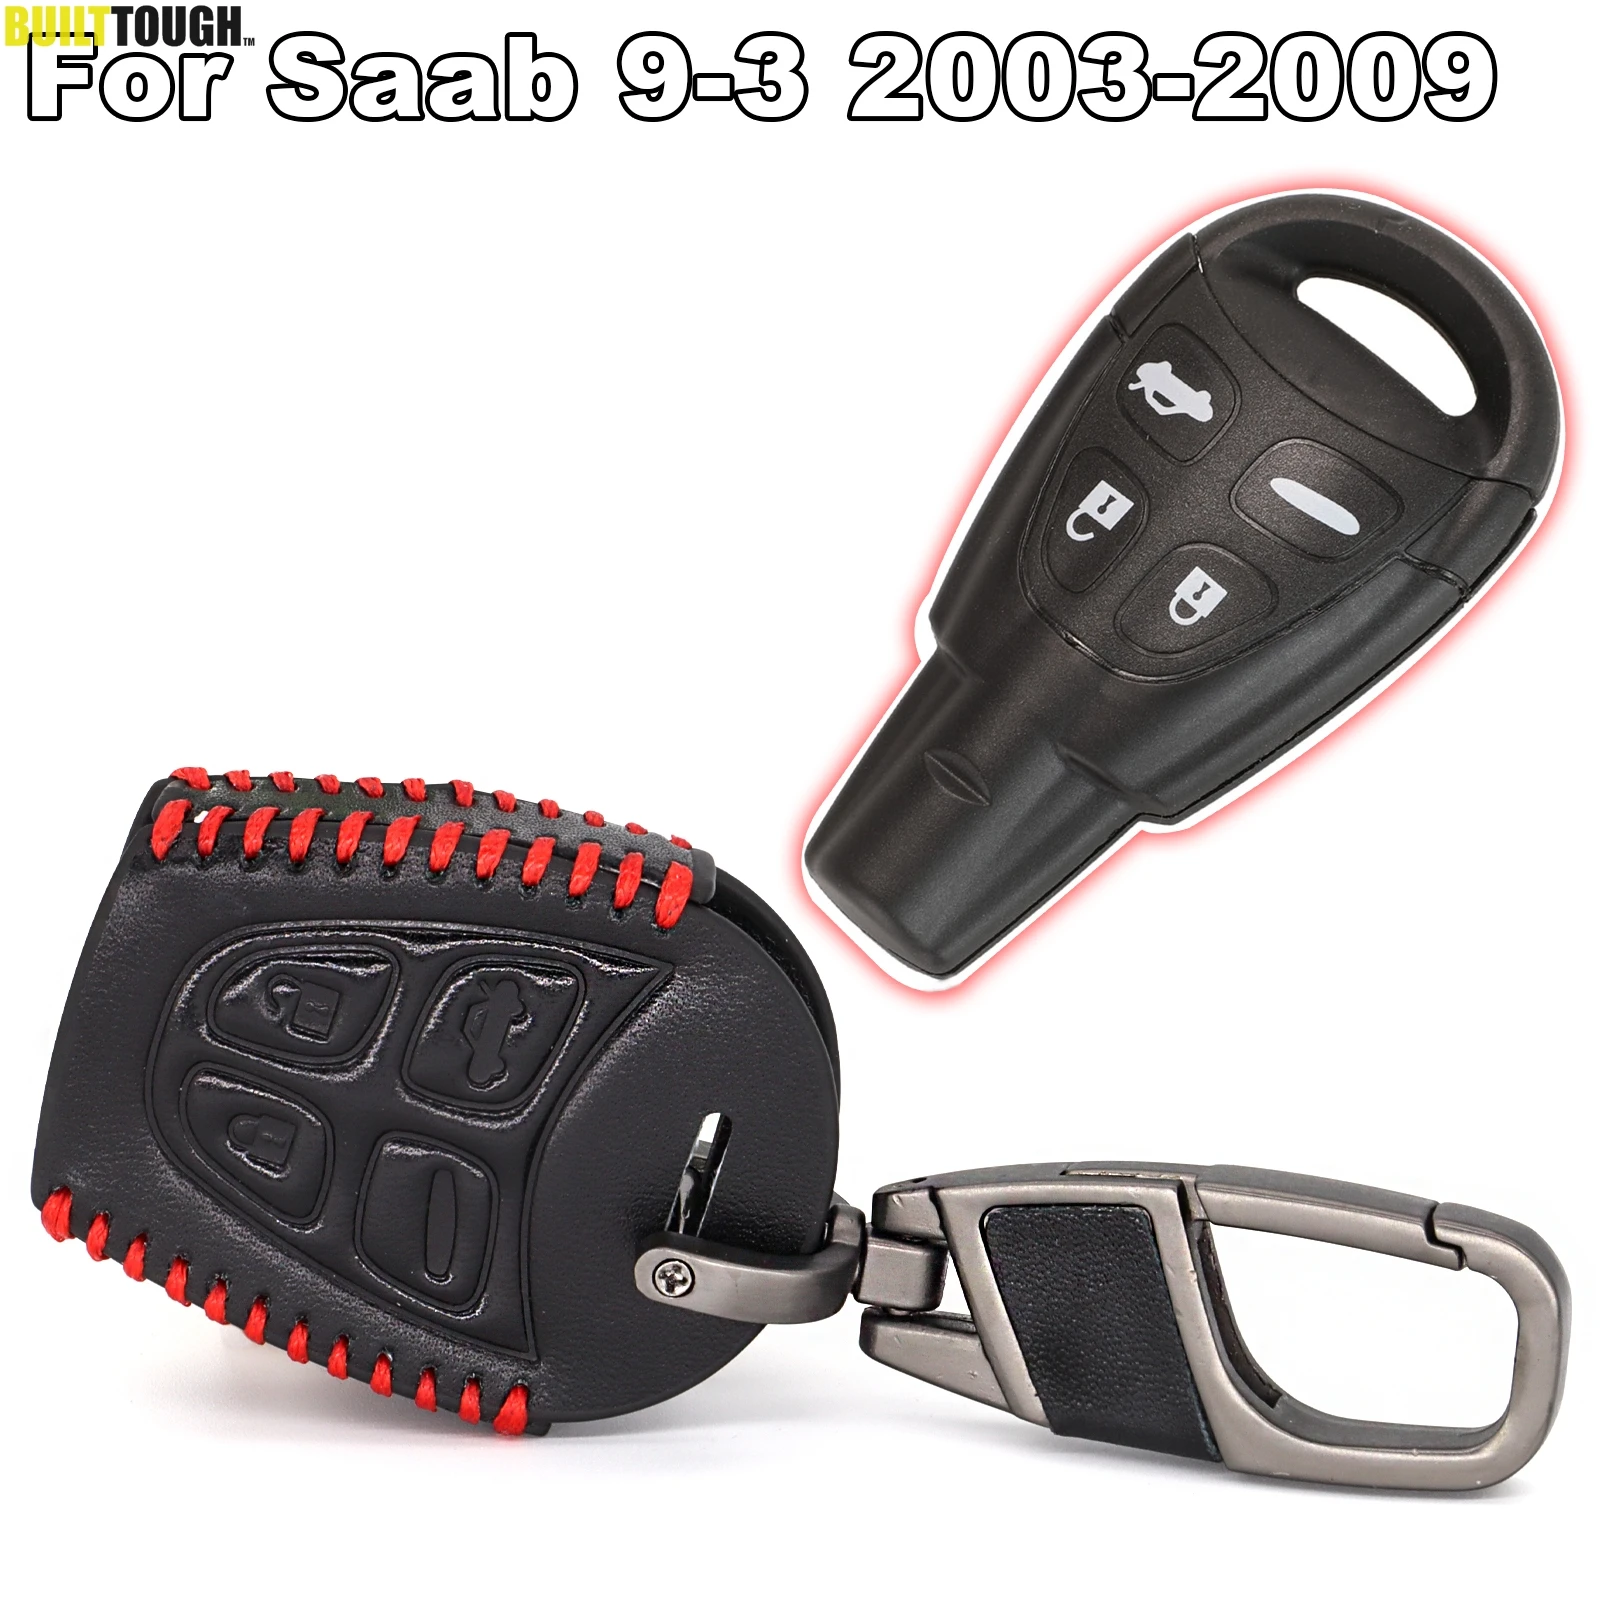 Remote Car Case Key Cover Holder Bag Fits For SAAB 9-3 93 2003-2009 Useful 